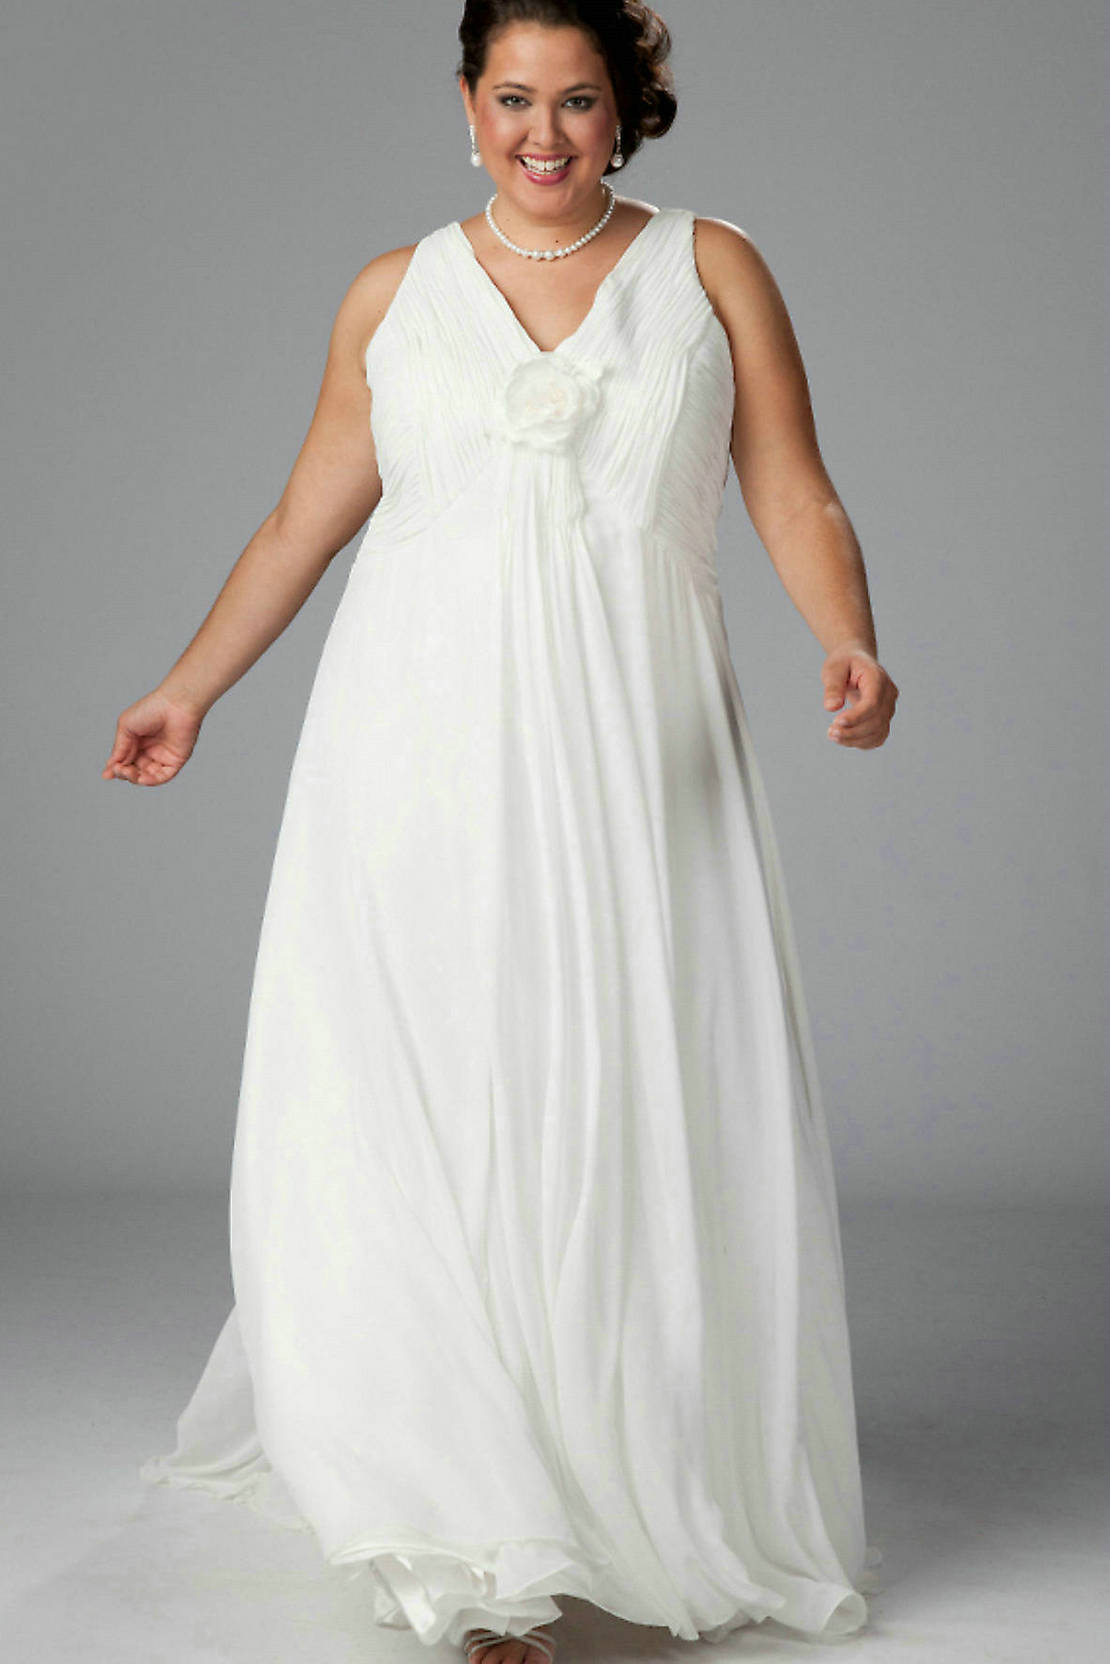 Свадебные платья плюс сайз 56-58 размер